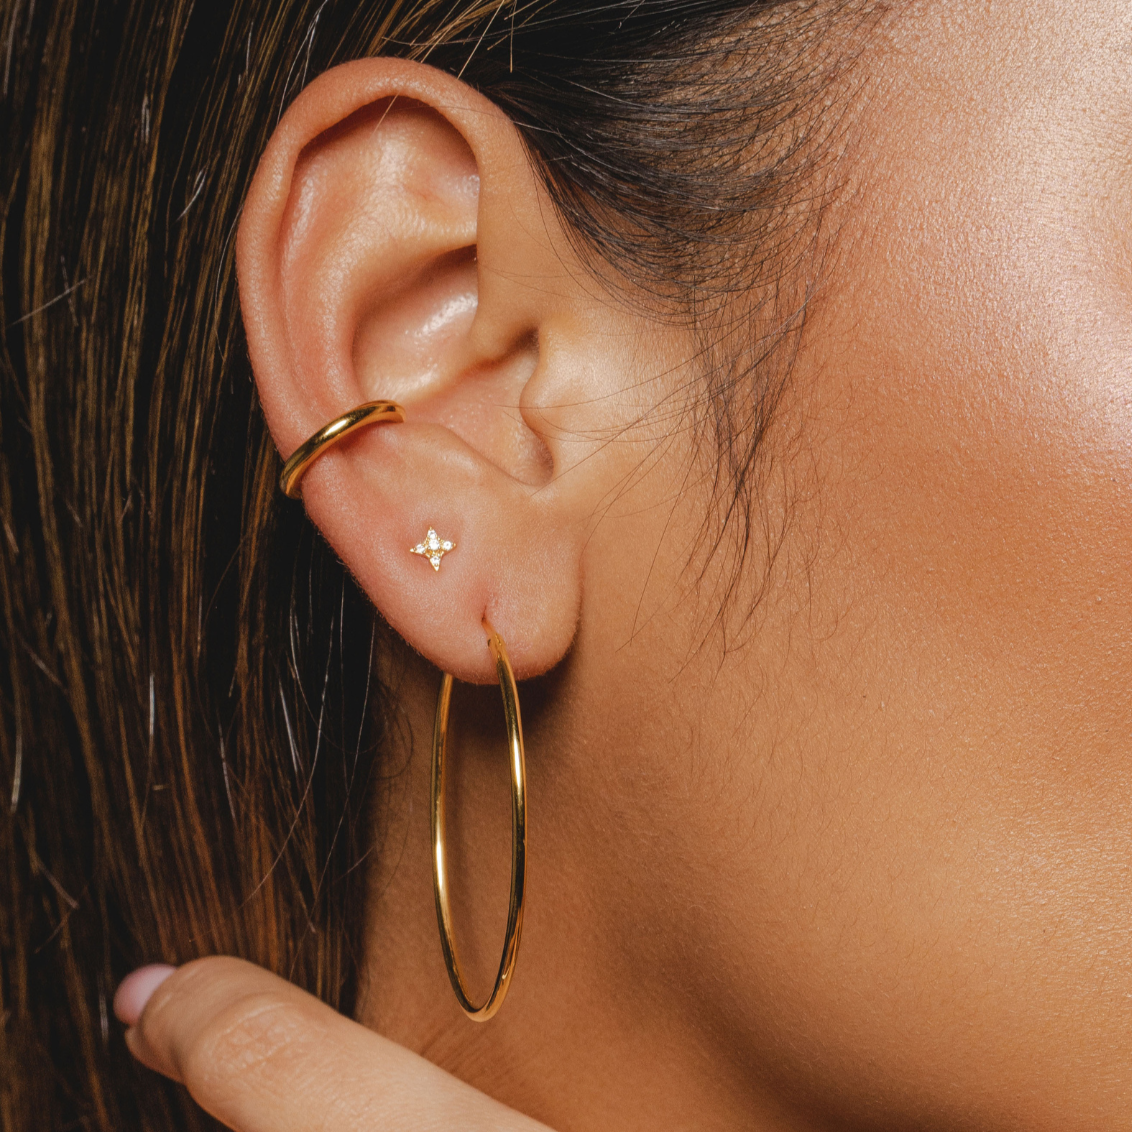 Gold Celestial Star Stud Earrings